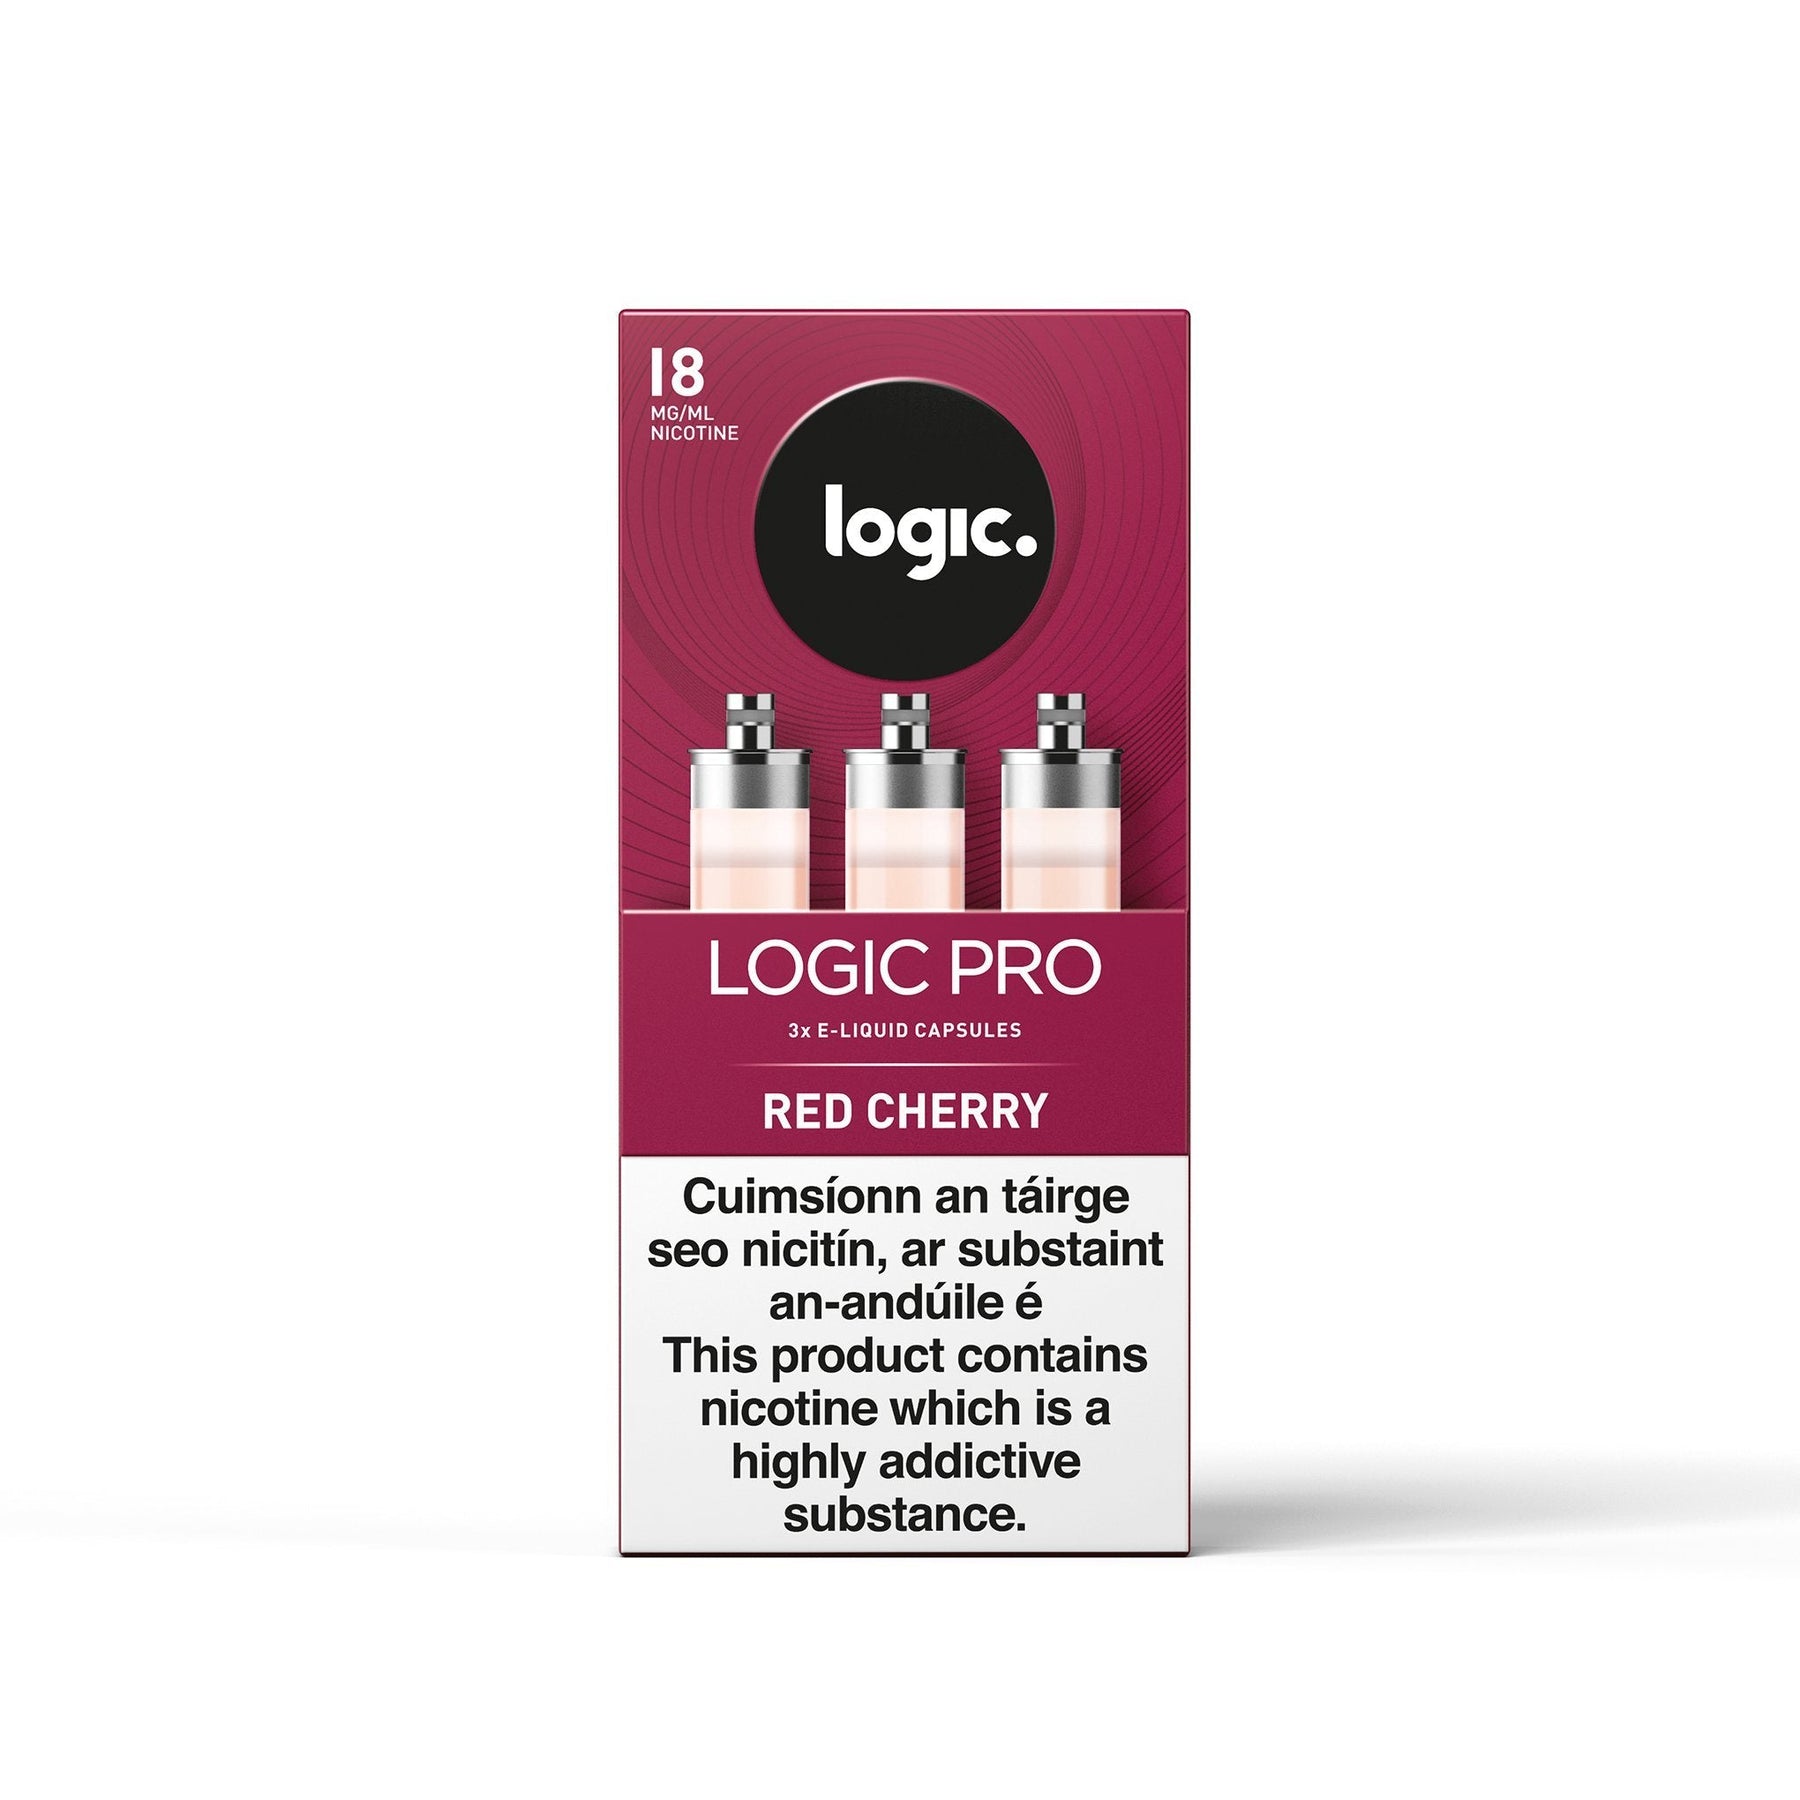 Logic Pro Capsules Red Cherry 18MG - High Nicotine